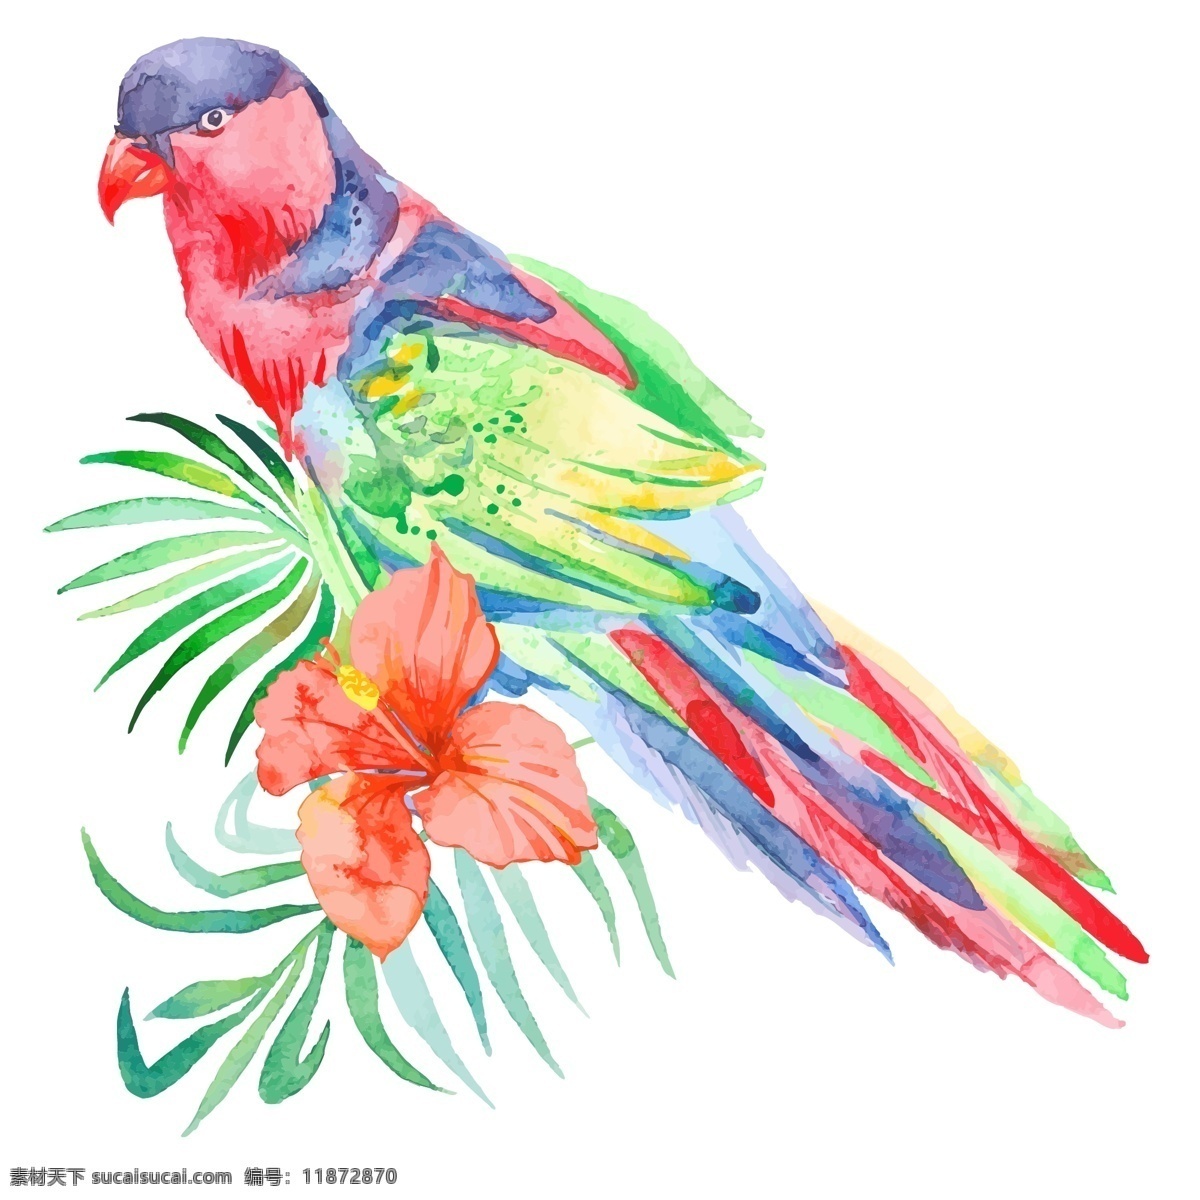 美丽 手绘 鹦鹉 动物 花朵 热带 水彩绘 花卉